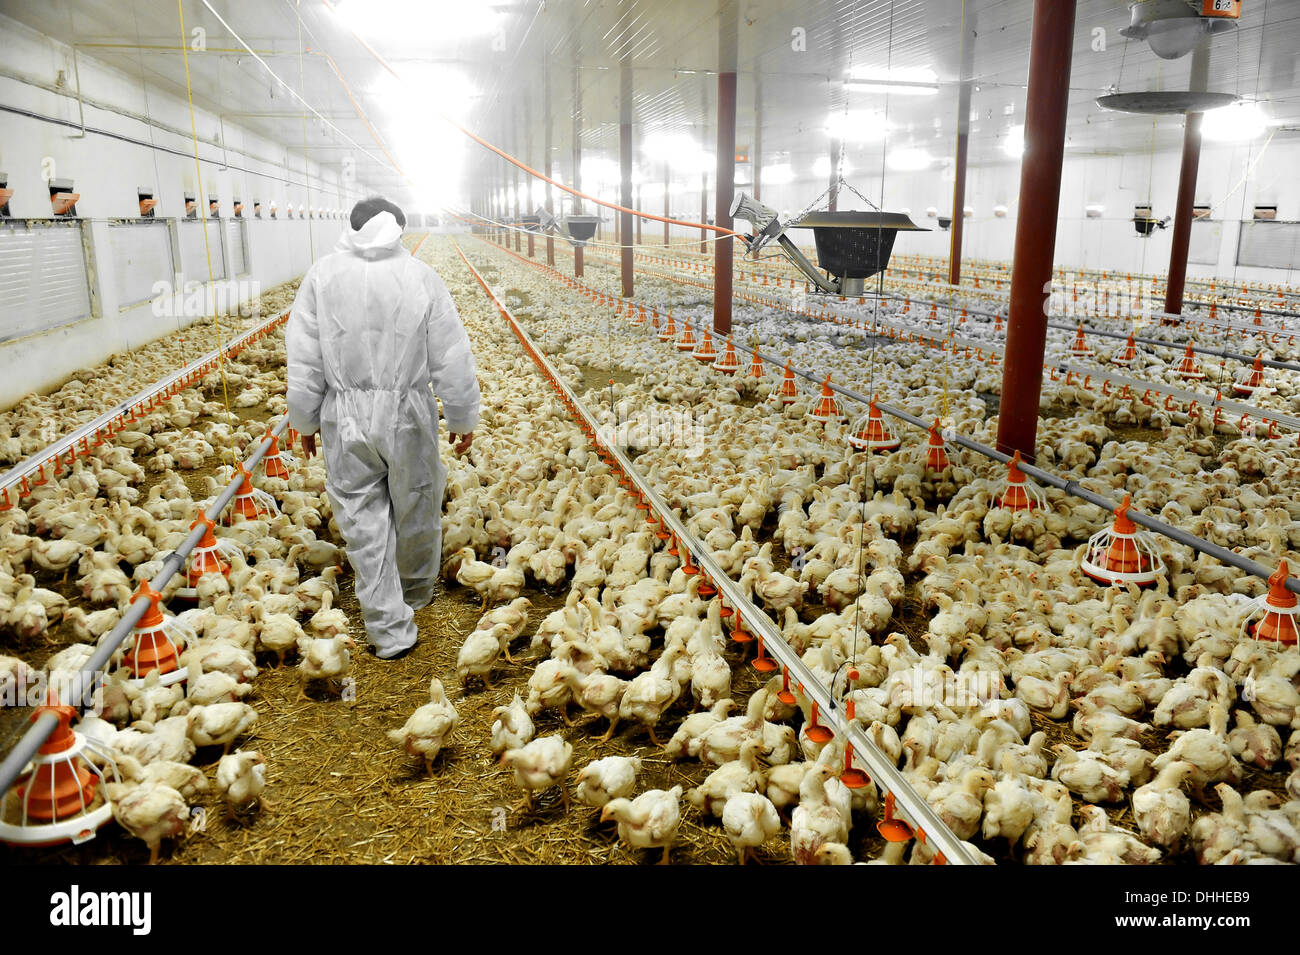 Un agricultor paseos veterinaria dentro de una granja avícola Foto de stock